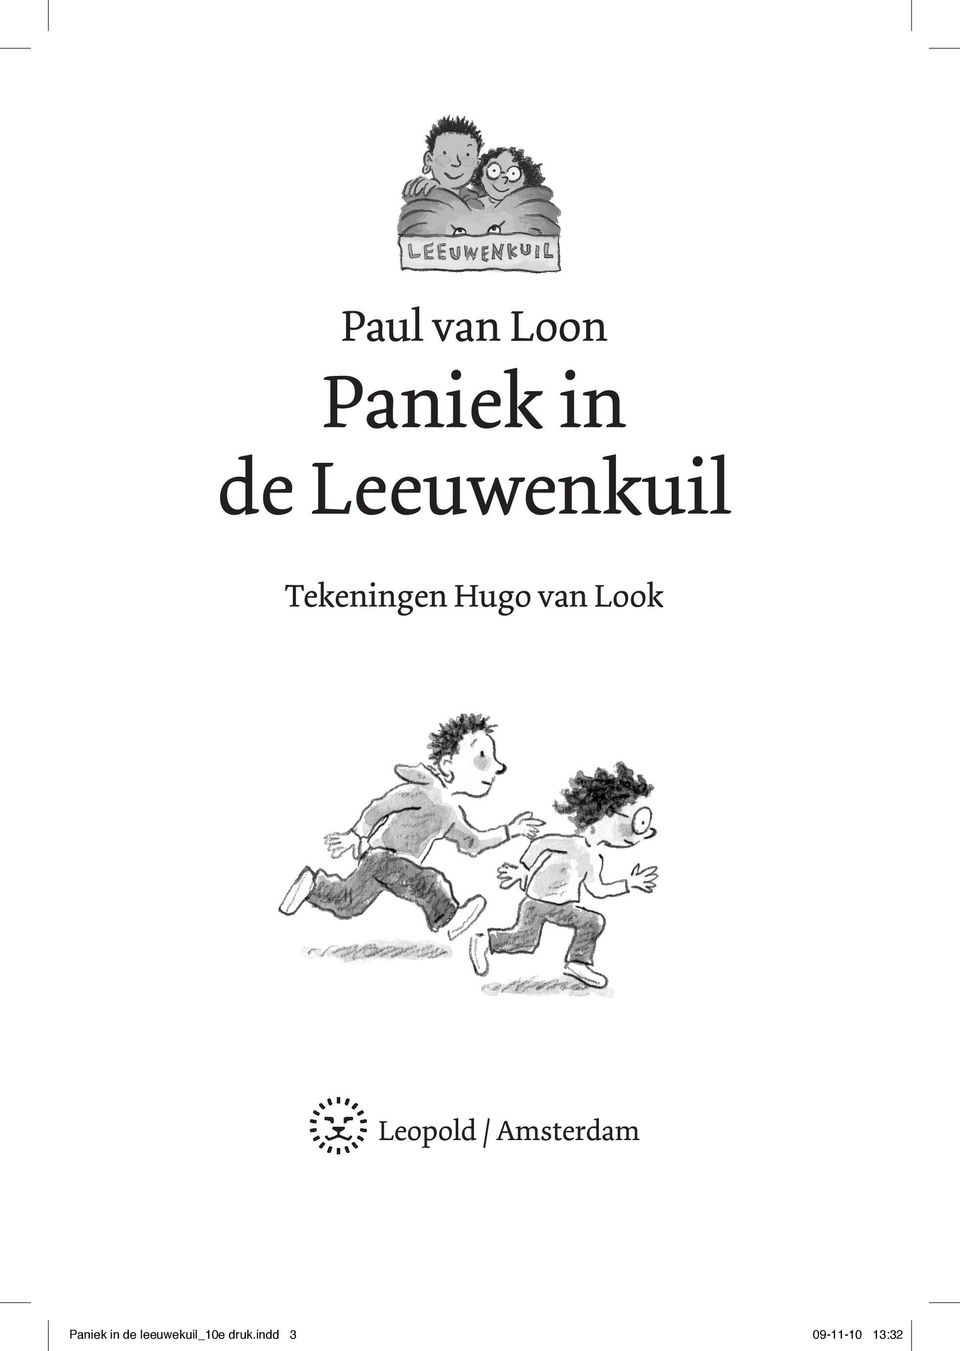 Look Leopold / Amsterdam Paniek in